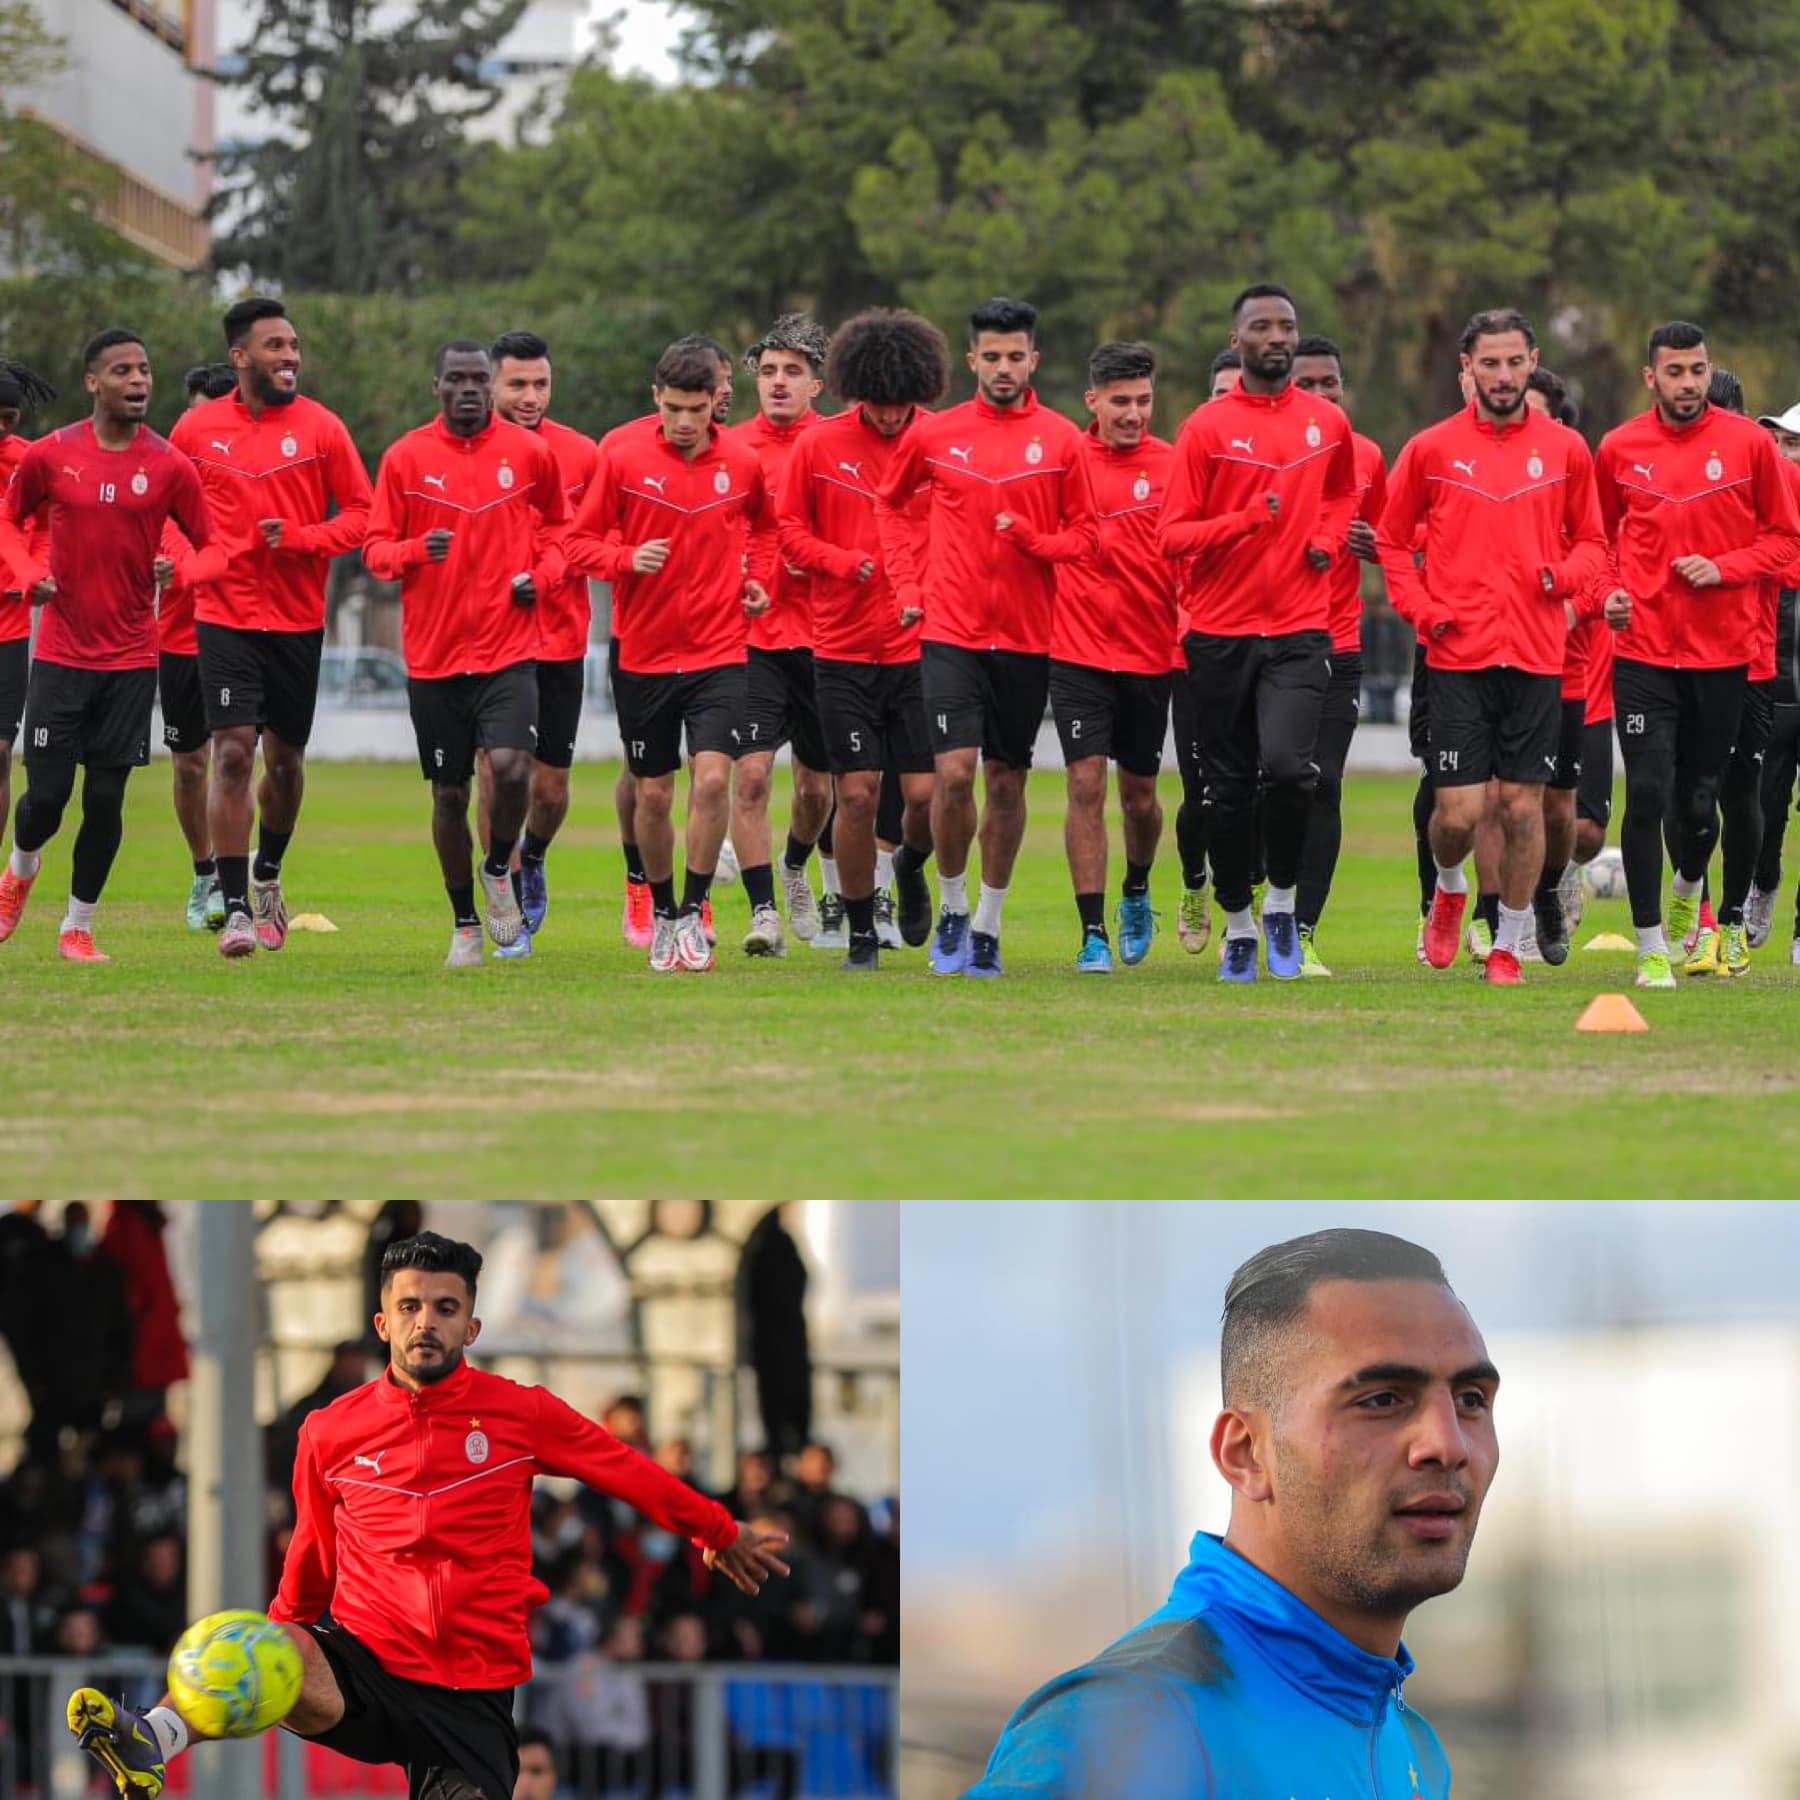 الاتحاد يتعاقد مع المدرب التونسي “الكوكي” لتدريب الفريق الأول لكرة القدم.